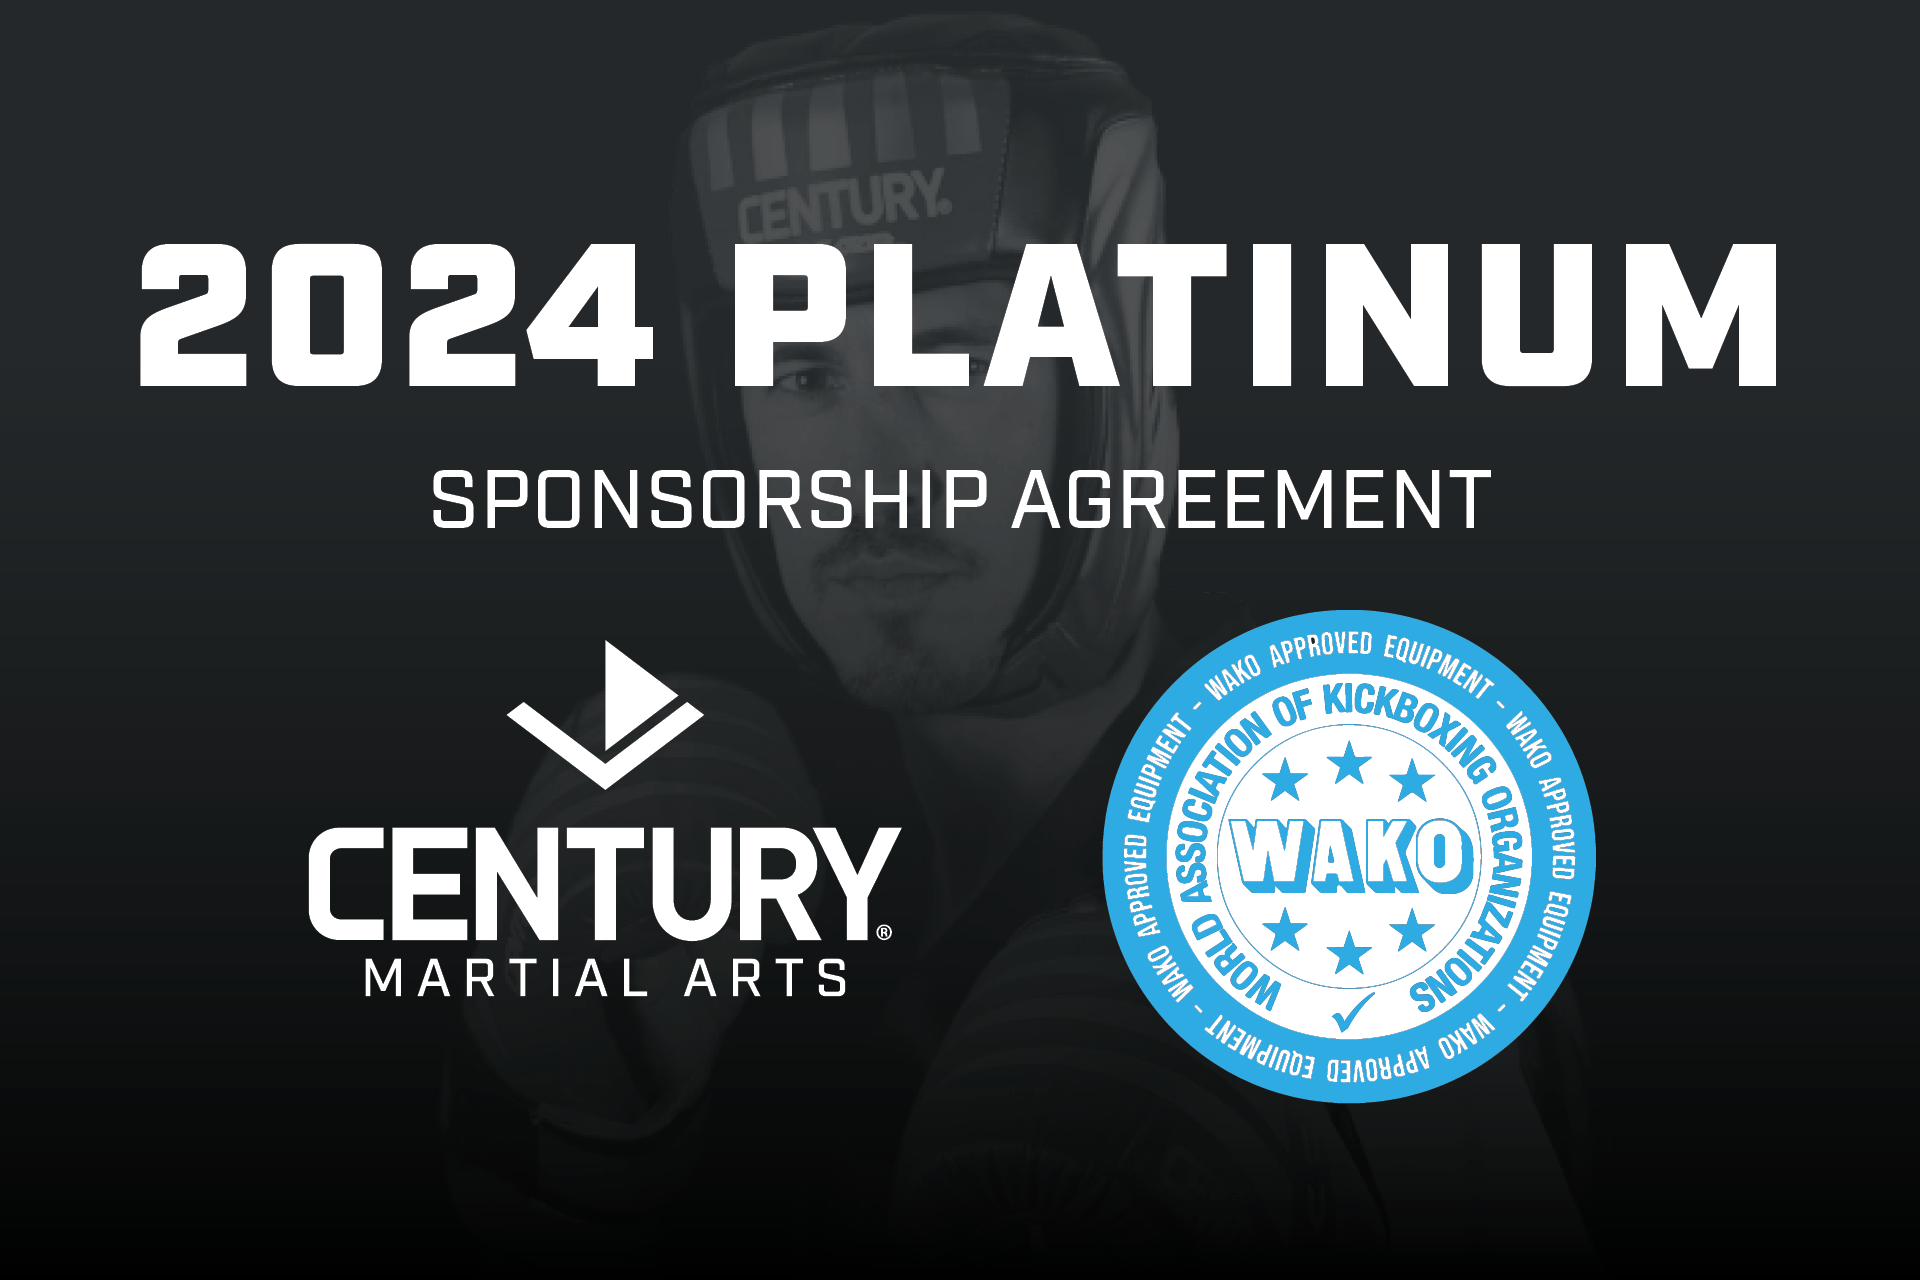 WAKO and Century sponsorship agreement graphic